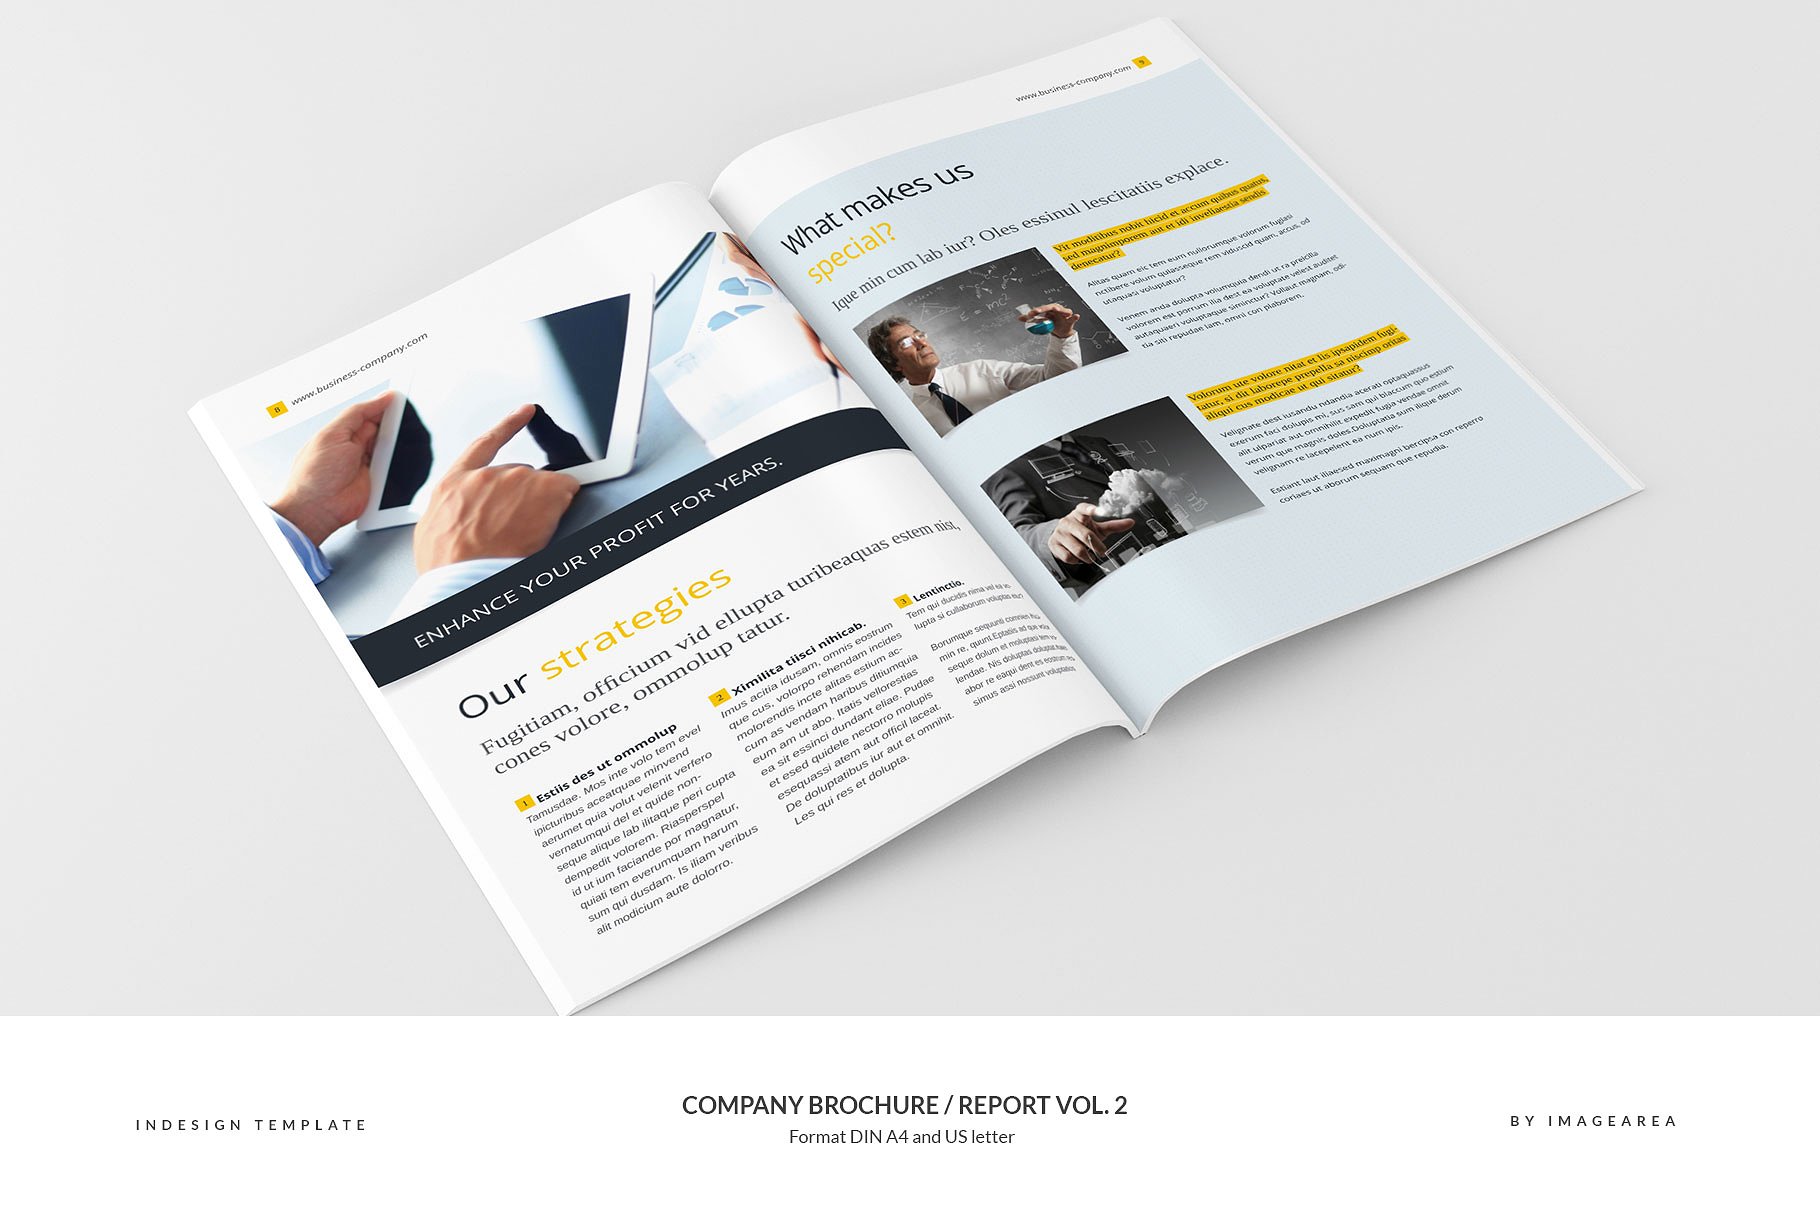 企业品牌宣传画册/企业年报设计模板v2 Company Brochure / Report Vol. 2插图(5)